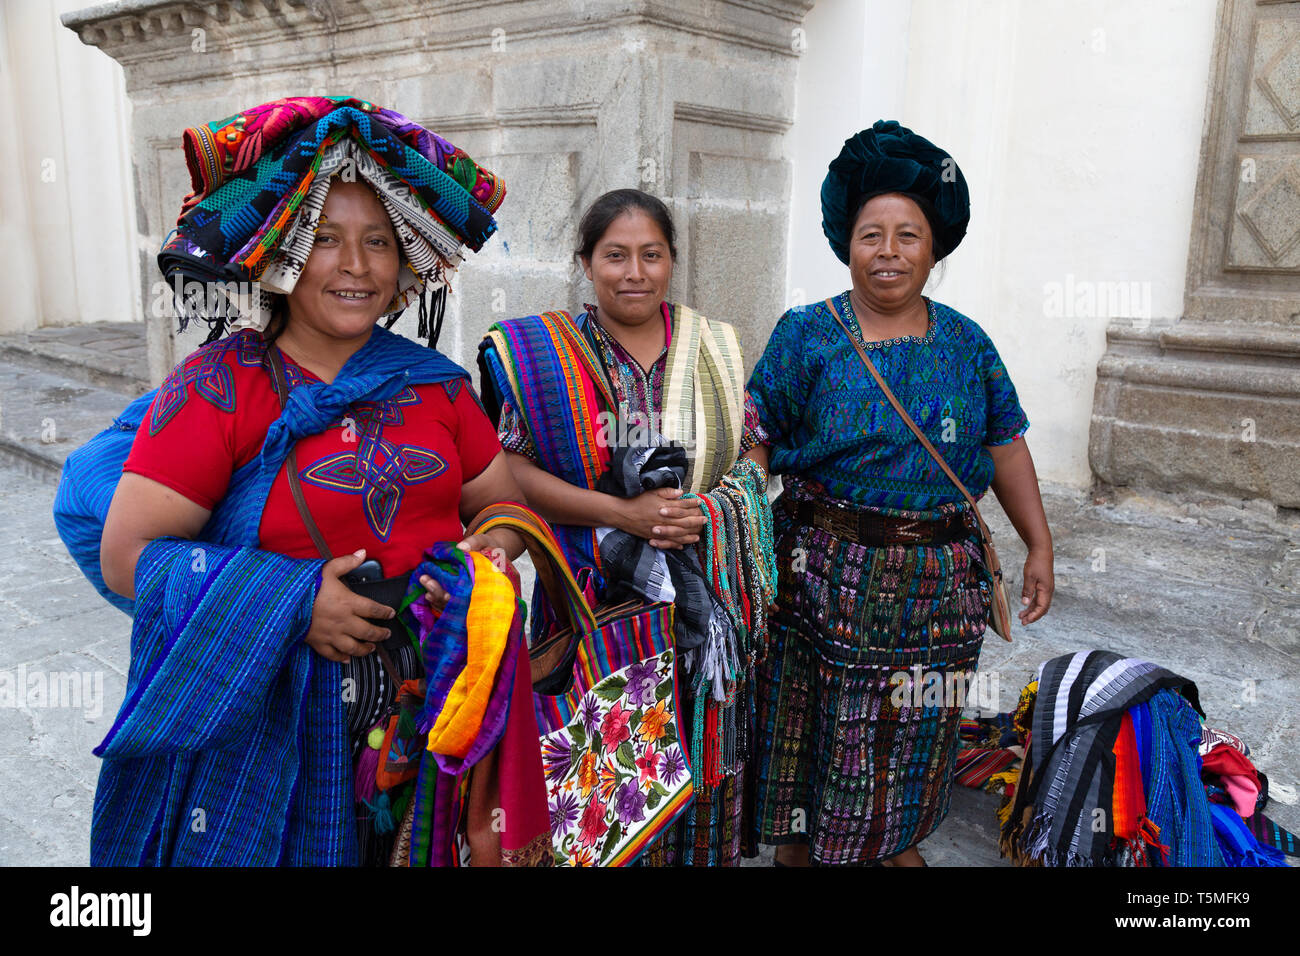 Lo stile di vita del Guatemala; Guatemala donne vendendo sciarpe e tessuti in strada, Antigua Guatemala America Centrale - Esempio di America Latina cultura Foto Stock